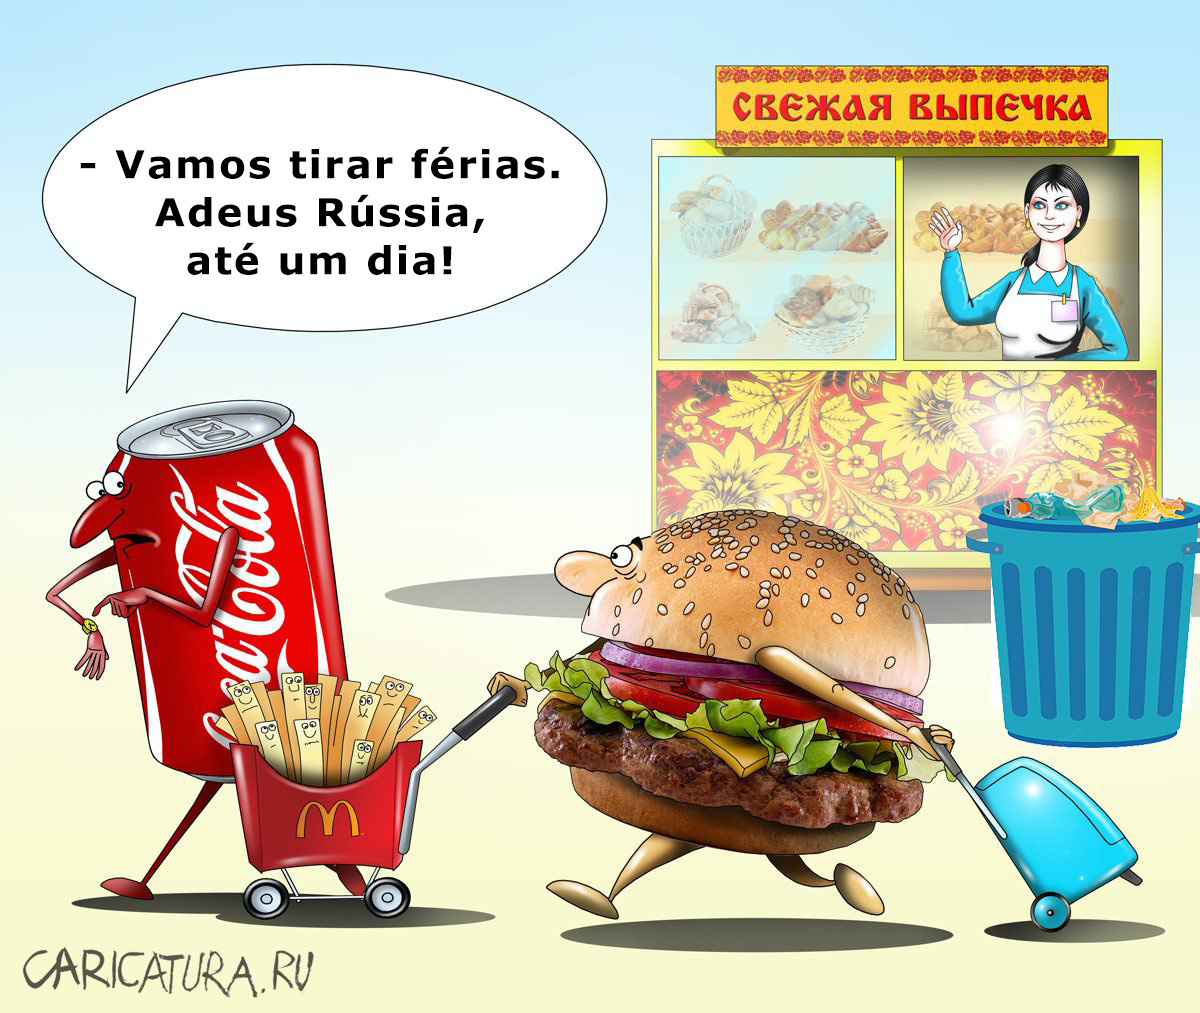 McDonald's abandona Rússia e Coca-Cola suspende atividade